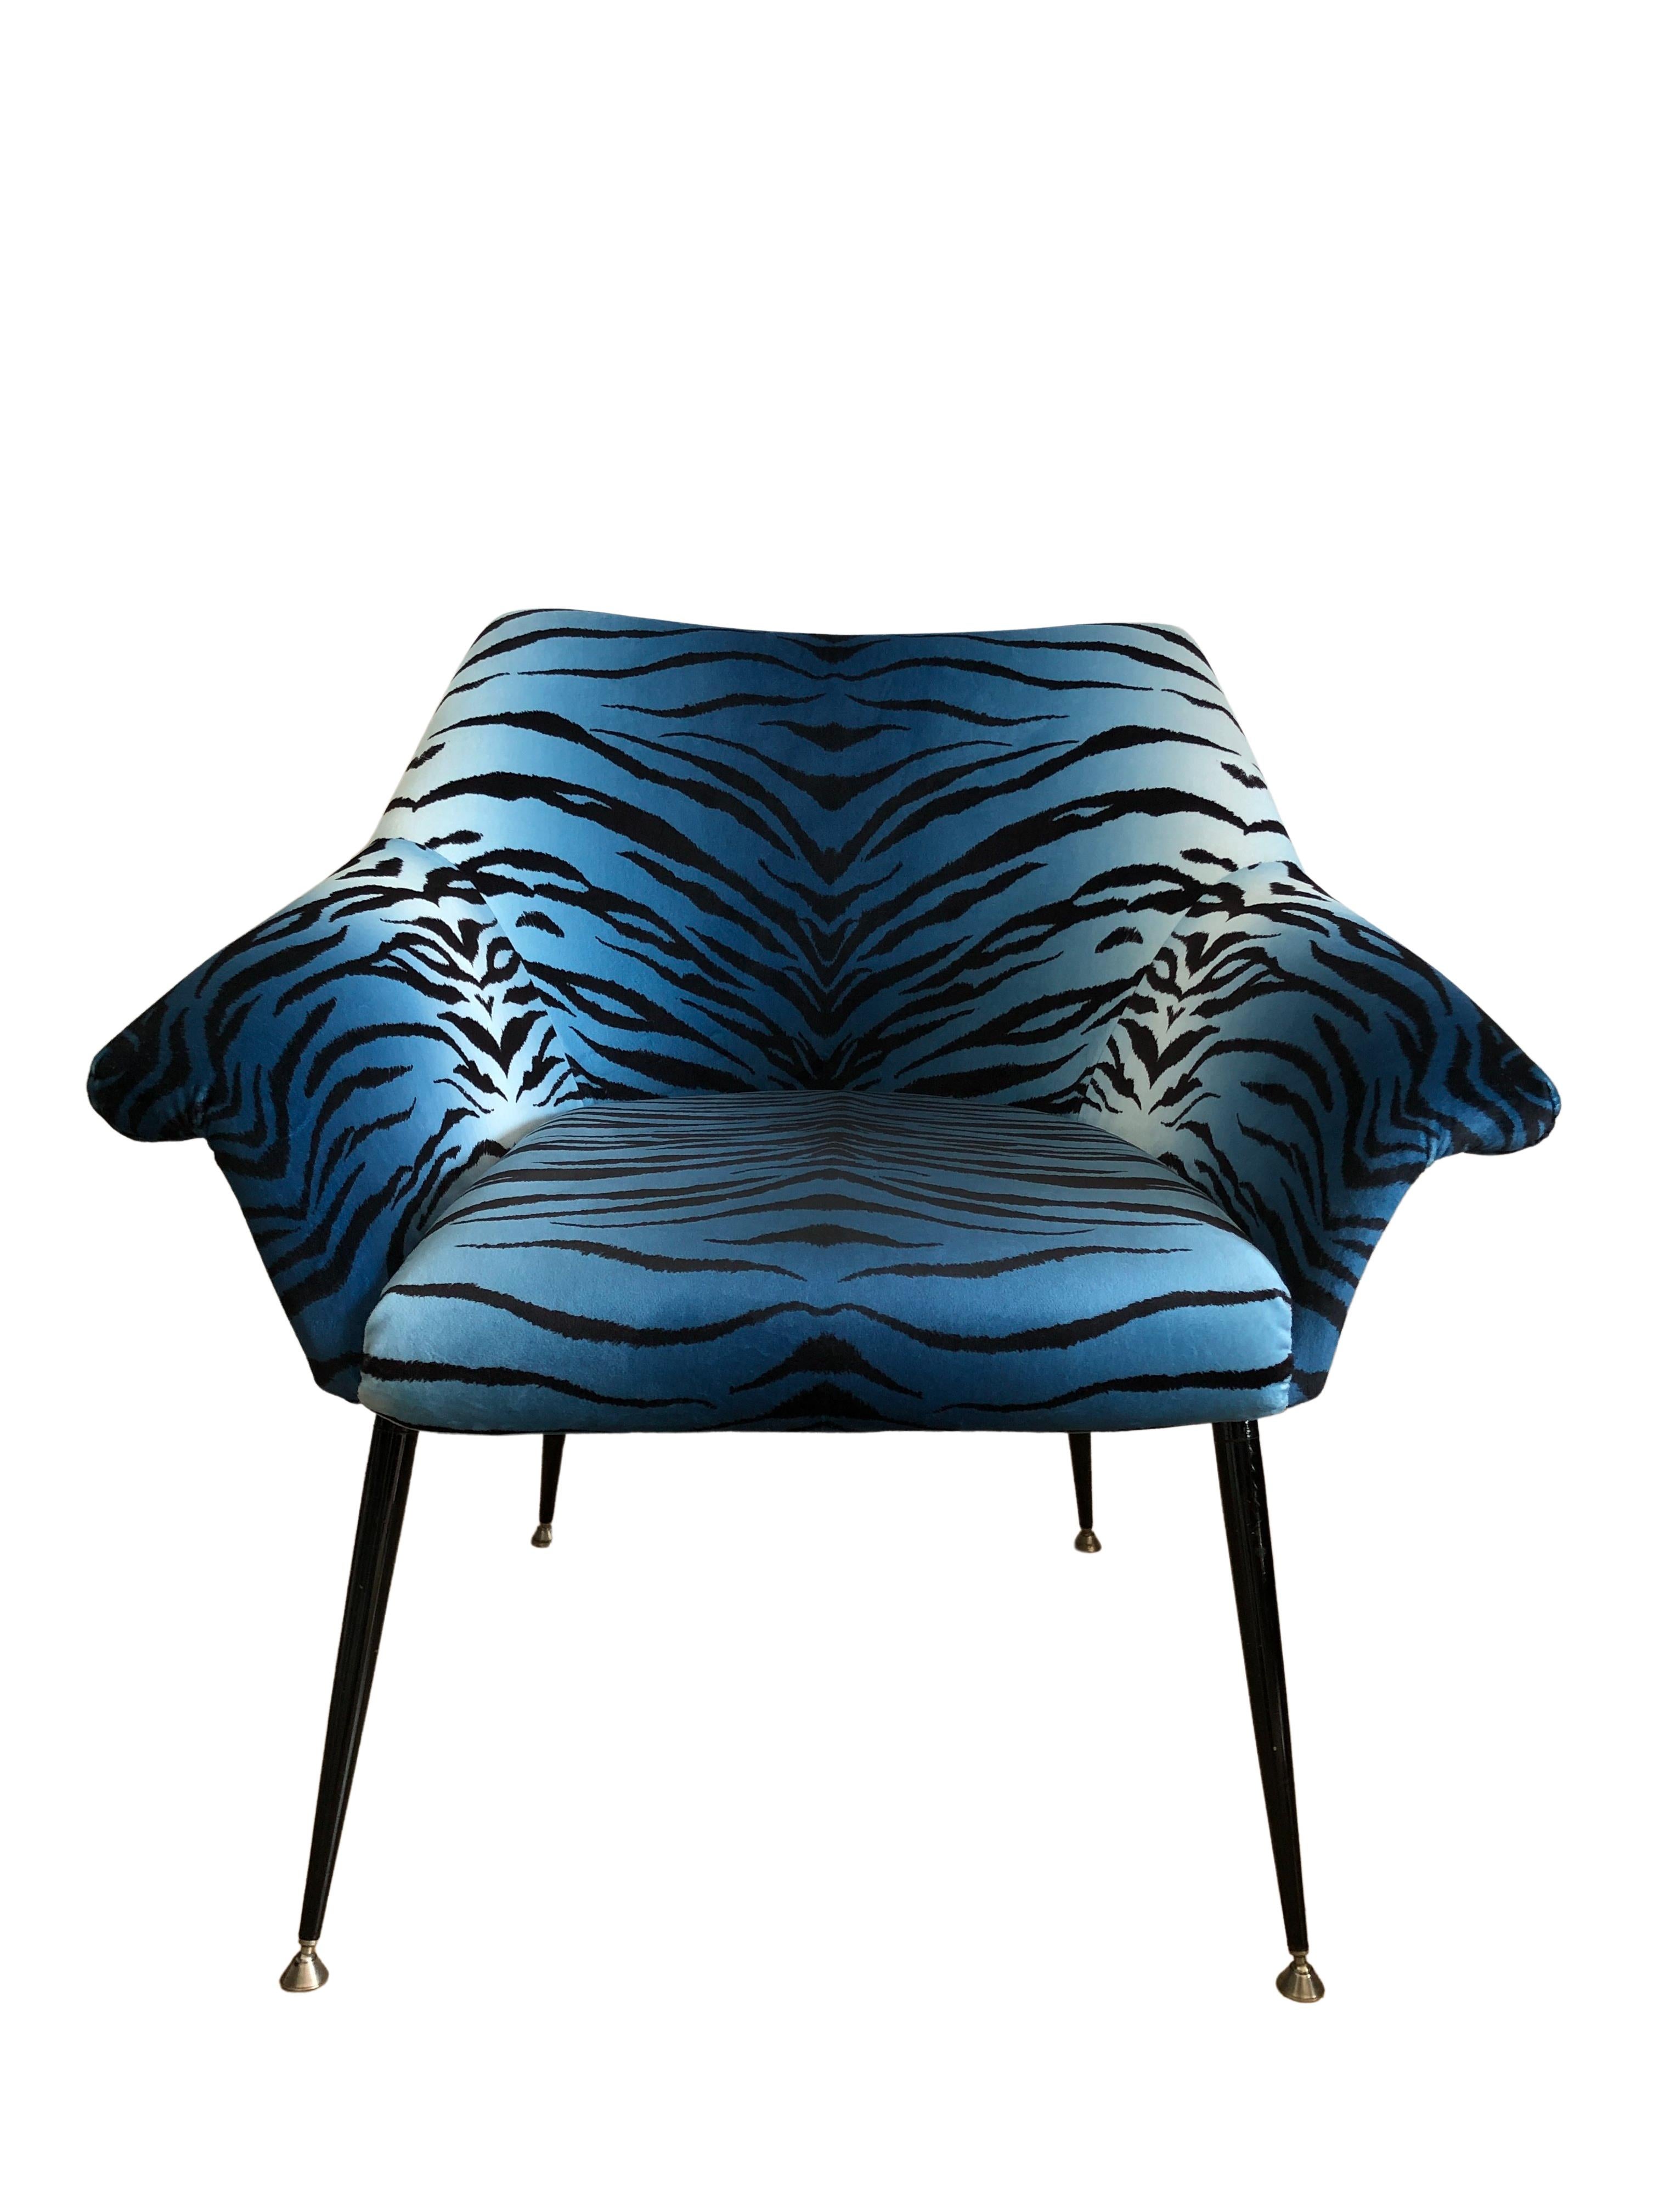 Mid-Century Modern Midcentury Armchair, in Blue Zebra Print Velvet, Europe, 1960s For Sale